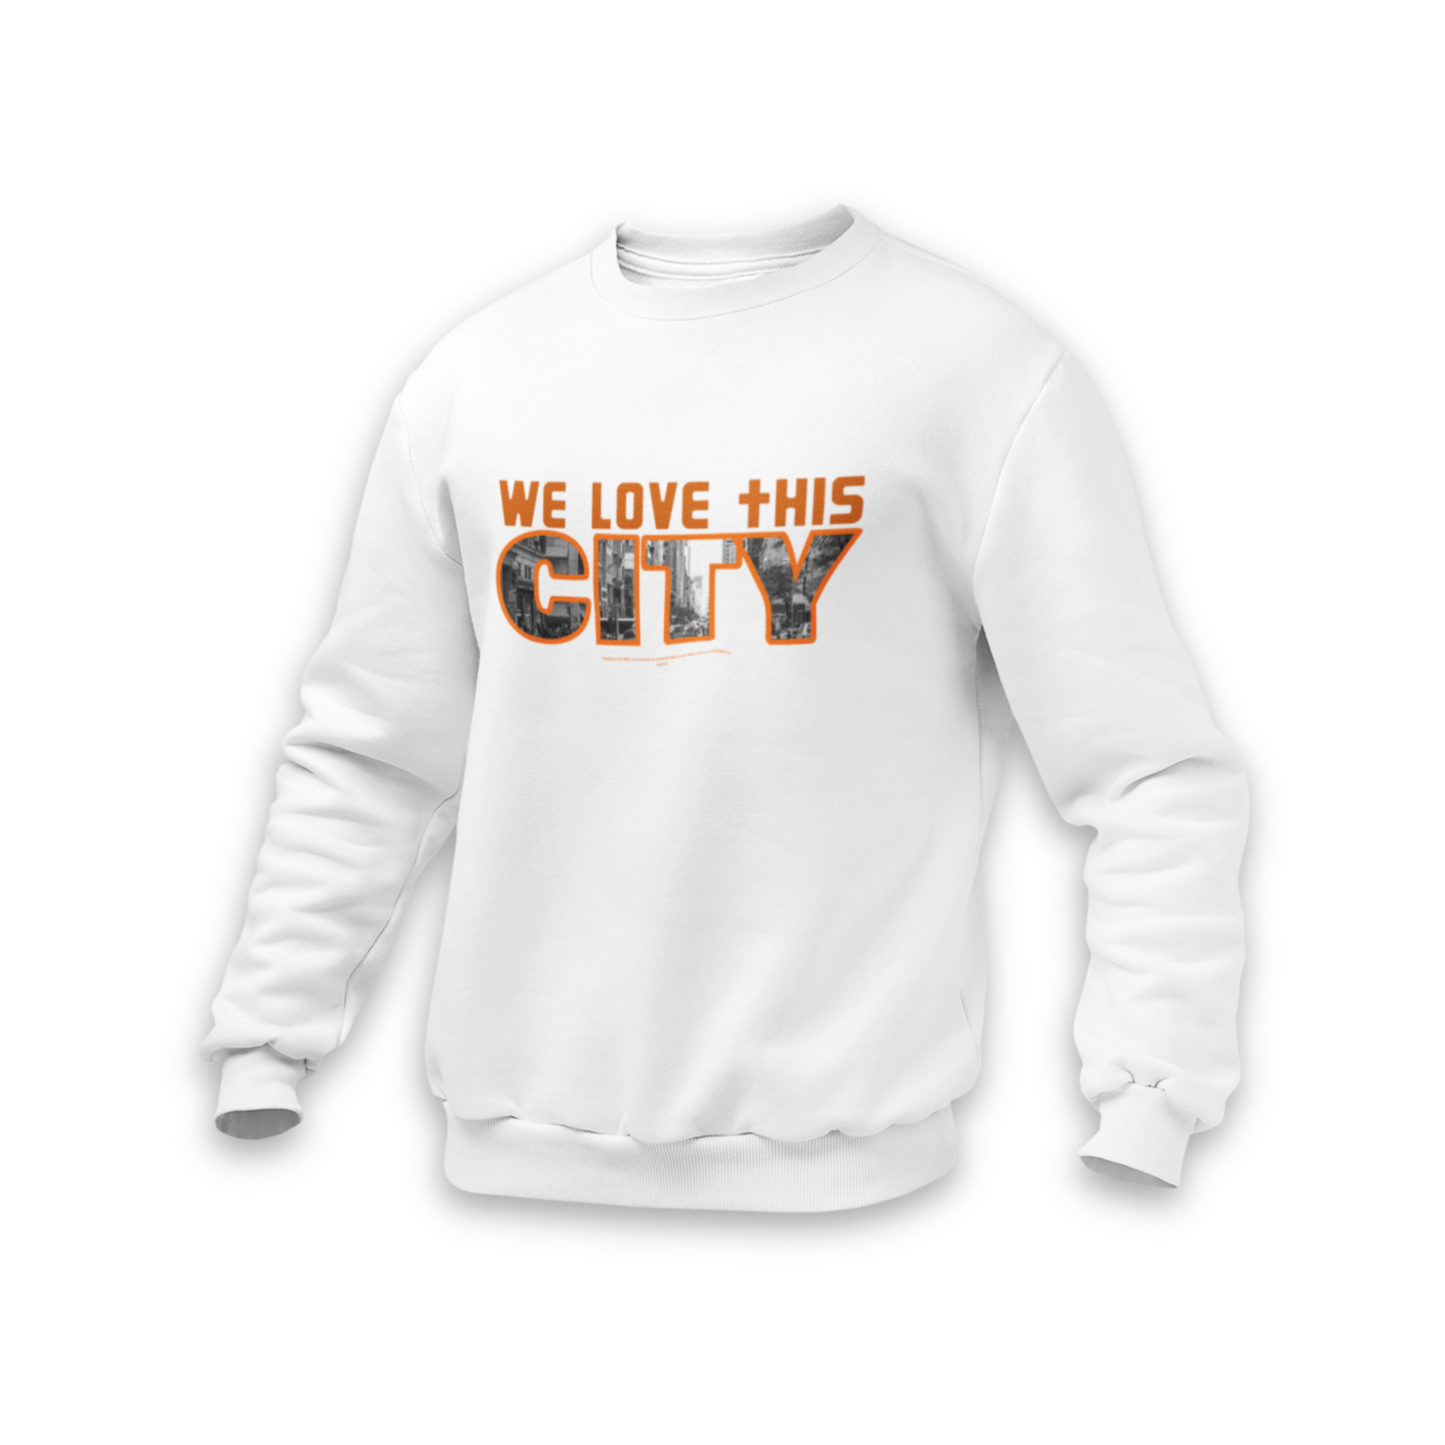 We love this City. Sweatshirt.